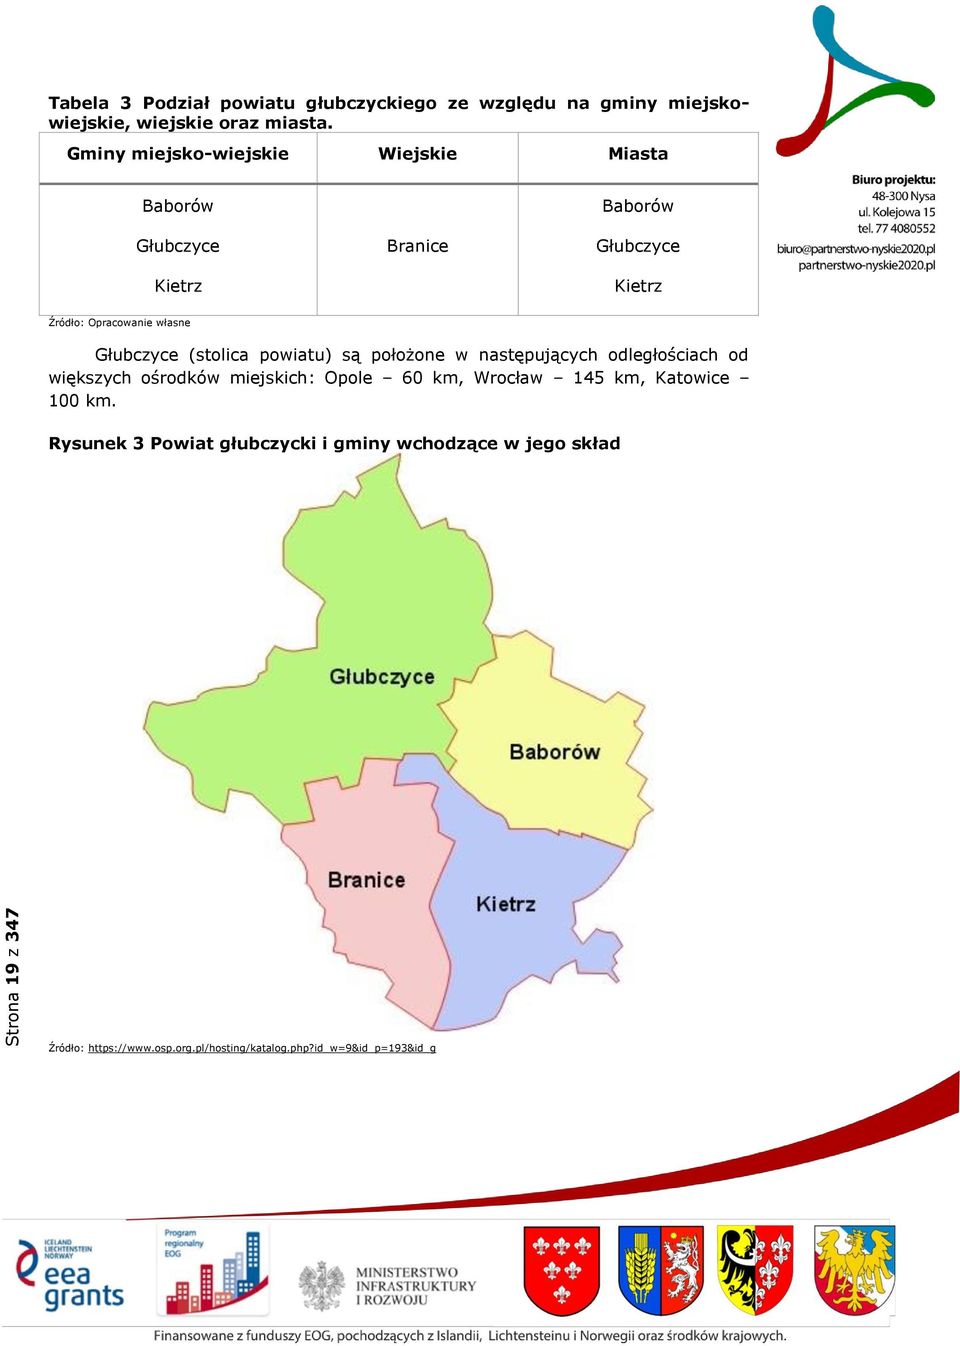 Głubczyce (stolica powiatu) są położone w następujących odległościach od większych ośrodków miejskich: Opole 60 km, Wrocław 145